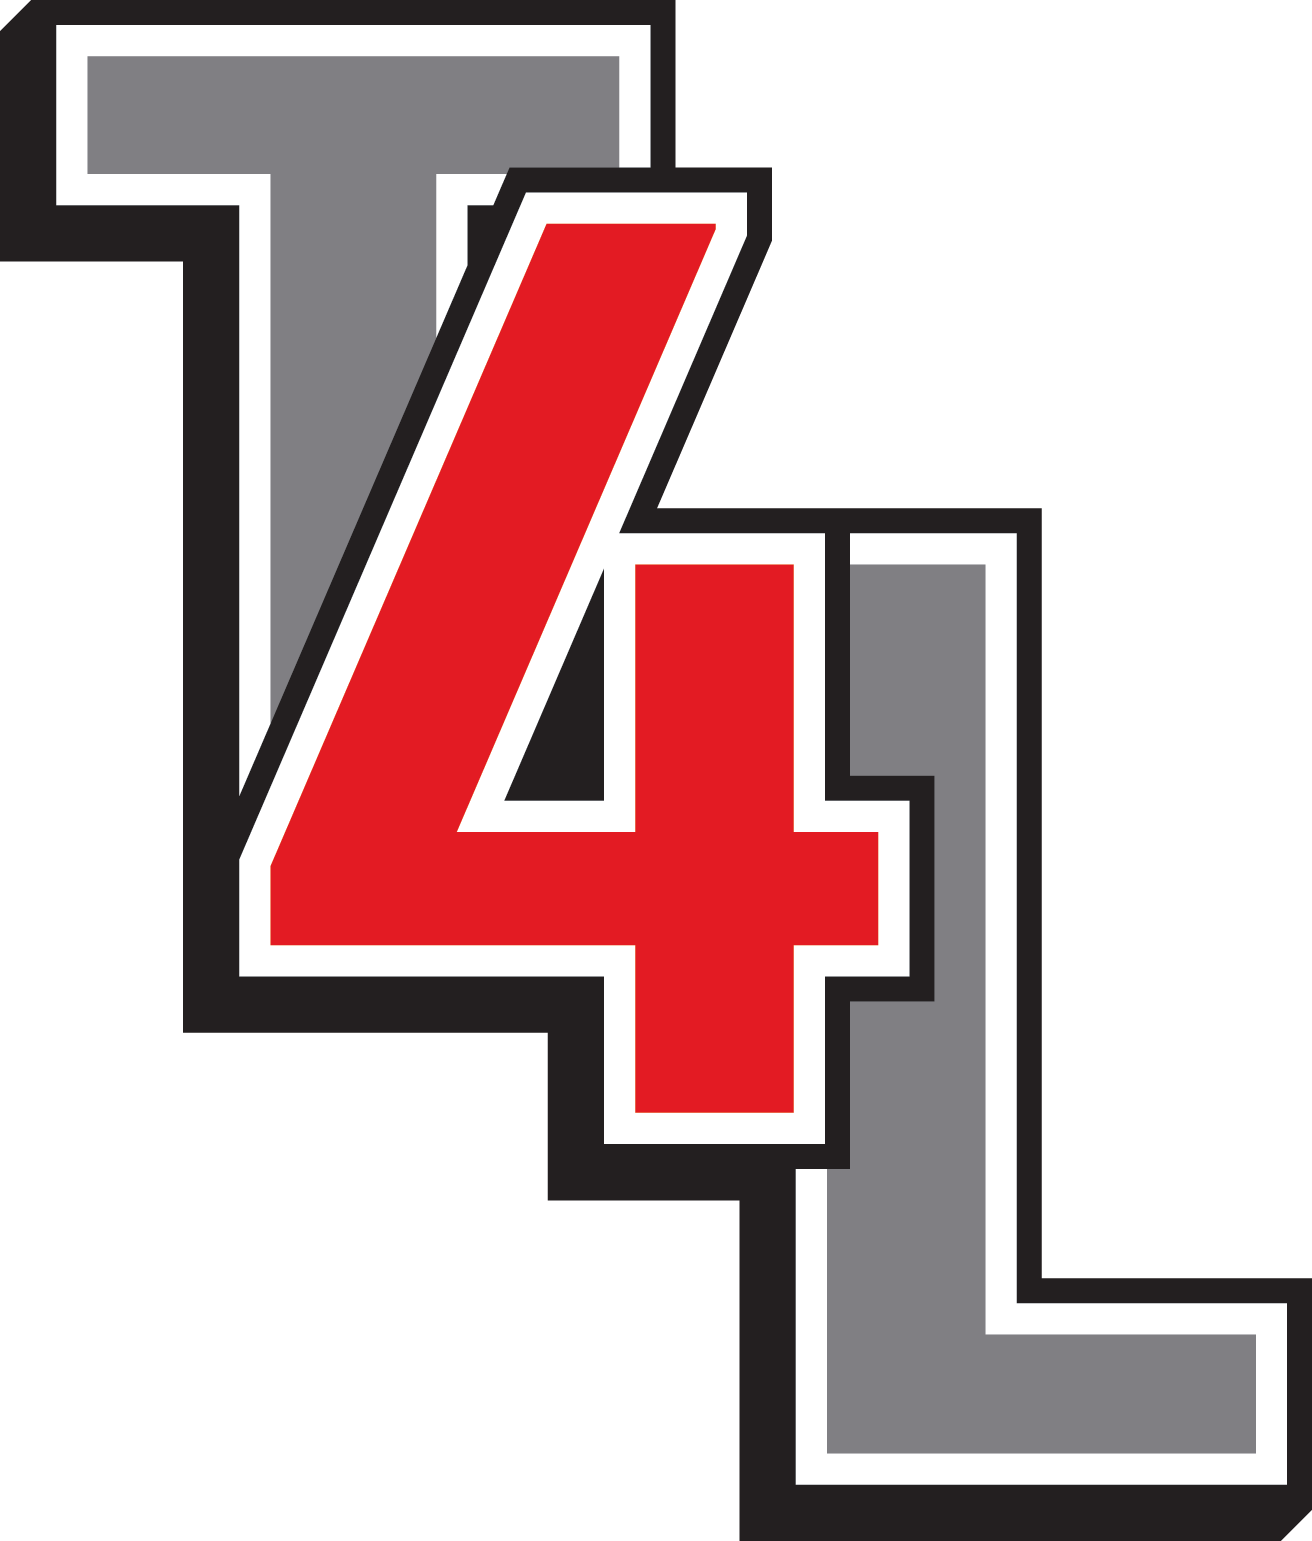 T4L logo.png